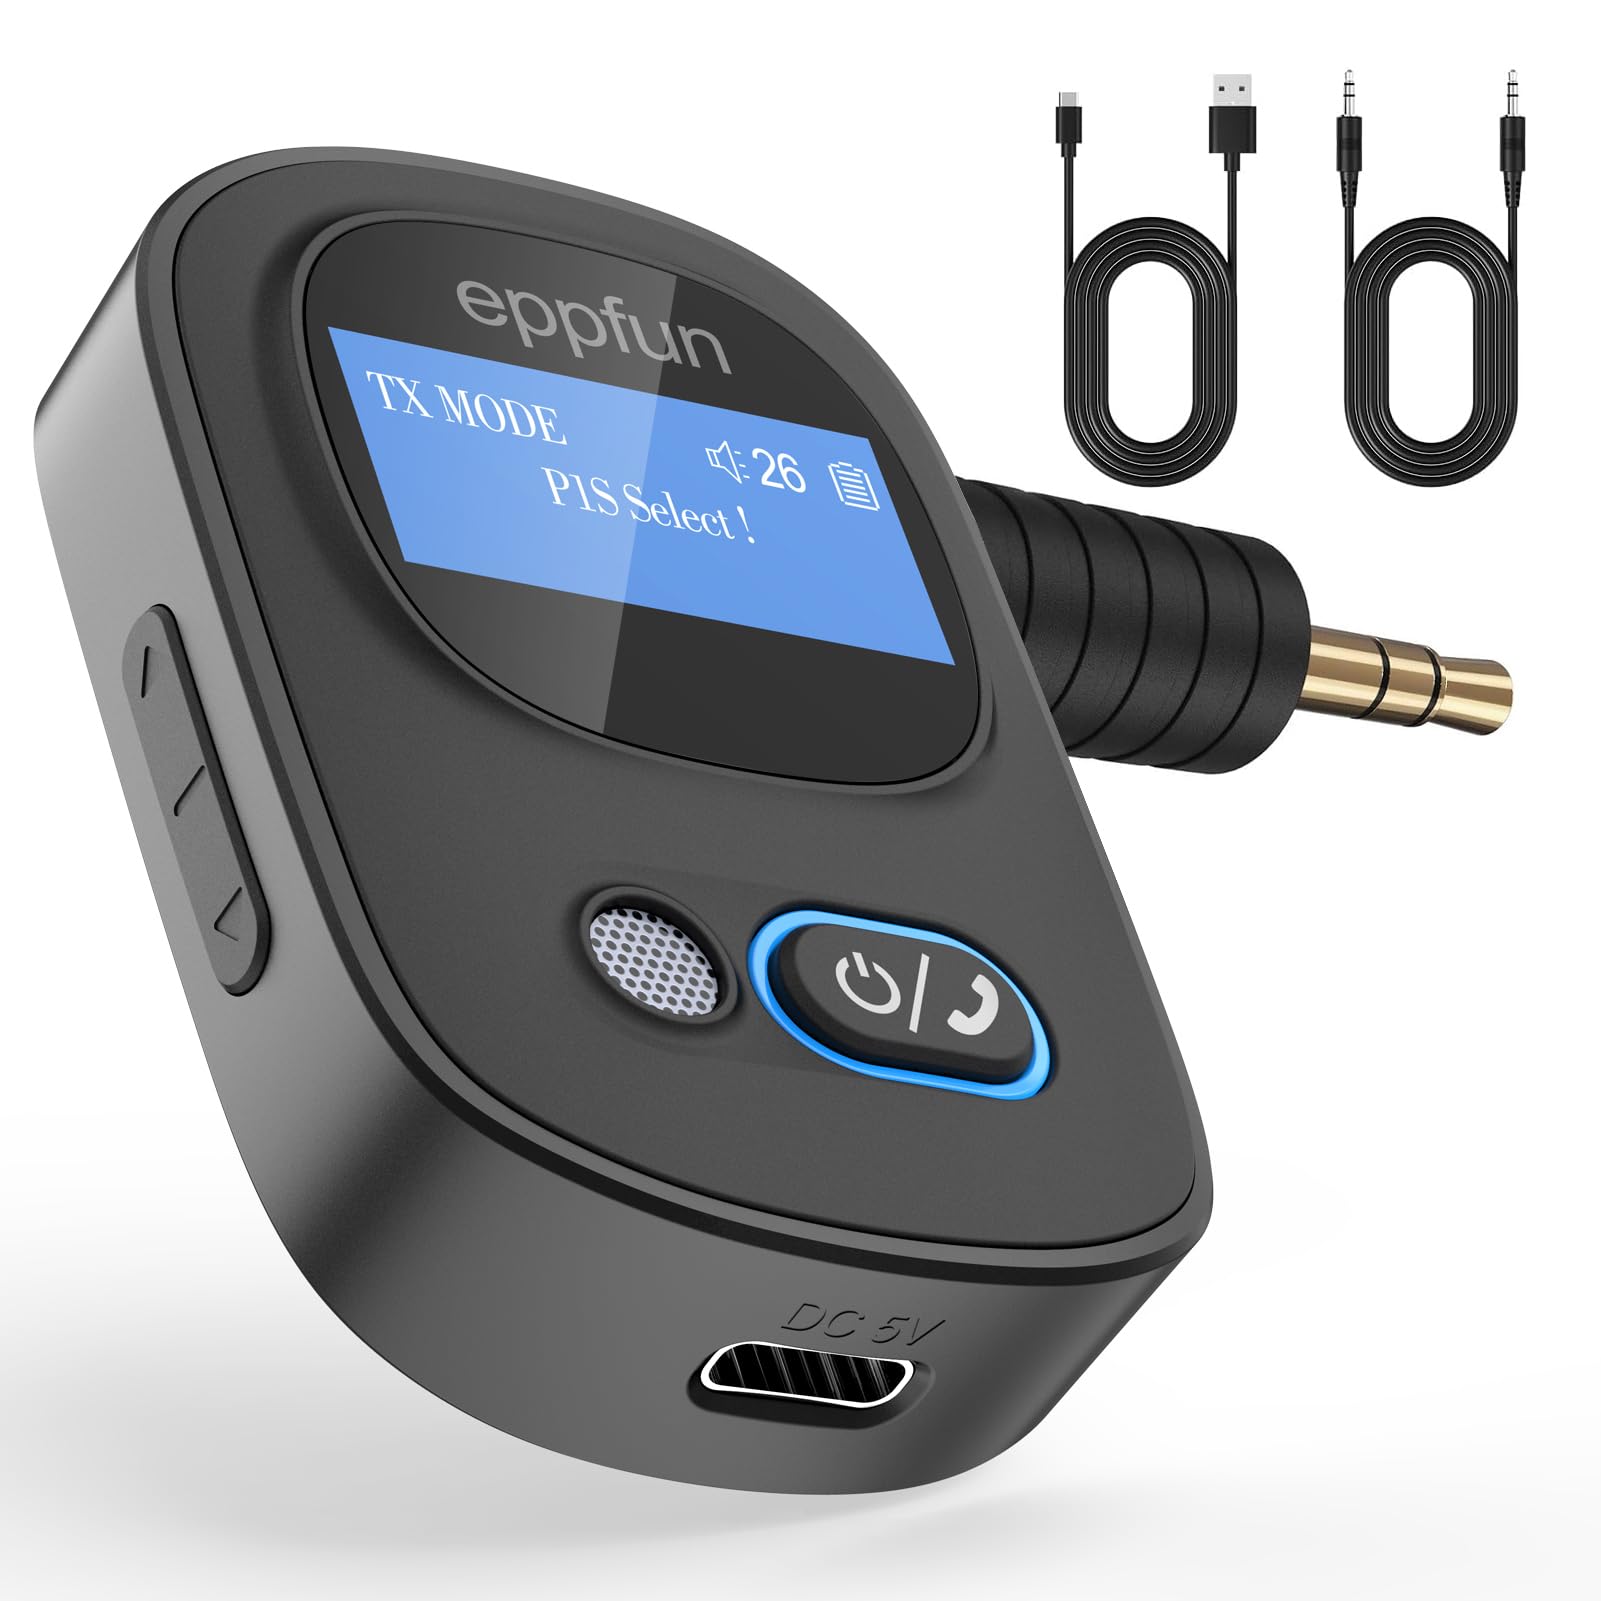 eppfun 3046G Pro LCDディスプレイ Bluetooth 5.3 トランスミッター & レシーバー 「一台二役」小型 ブルートゥース 受信機 送信機 TFカード対応 ハンズフリー通話 車載スピーカー/PC/テレビ/ホームステレオ 3.5mmイヤホンジャック搭載 など使用